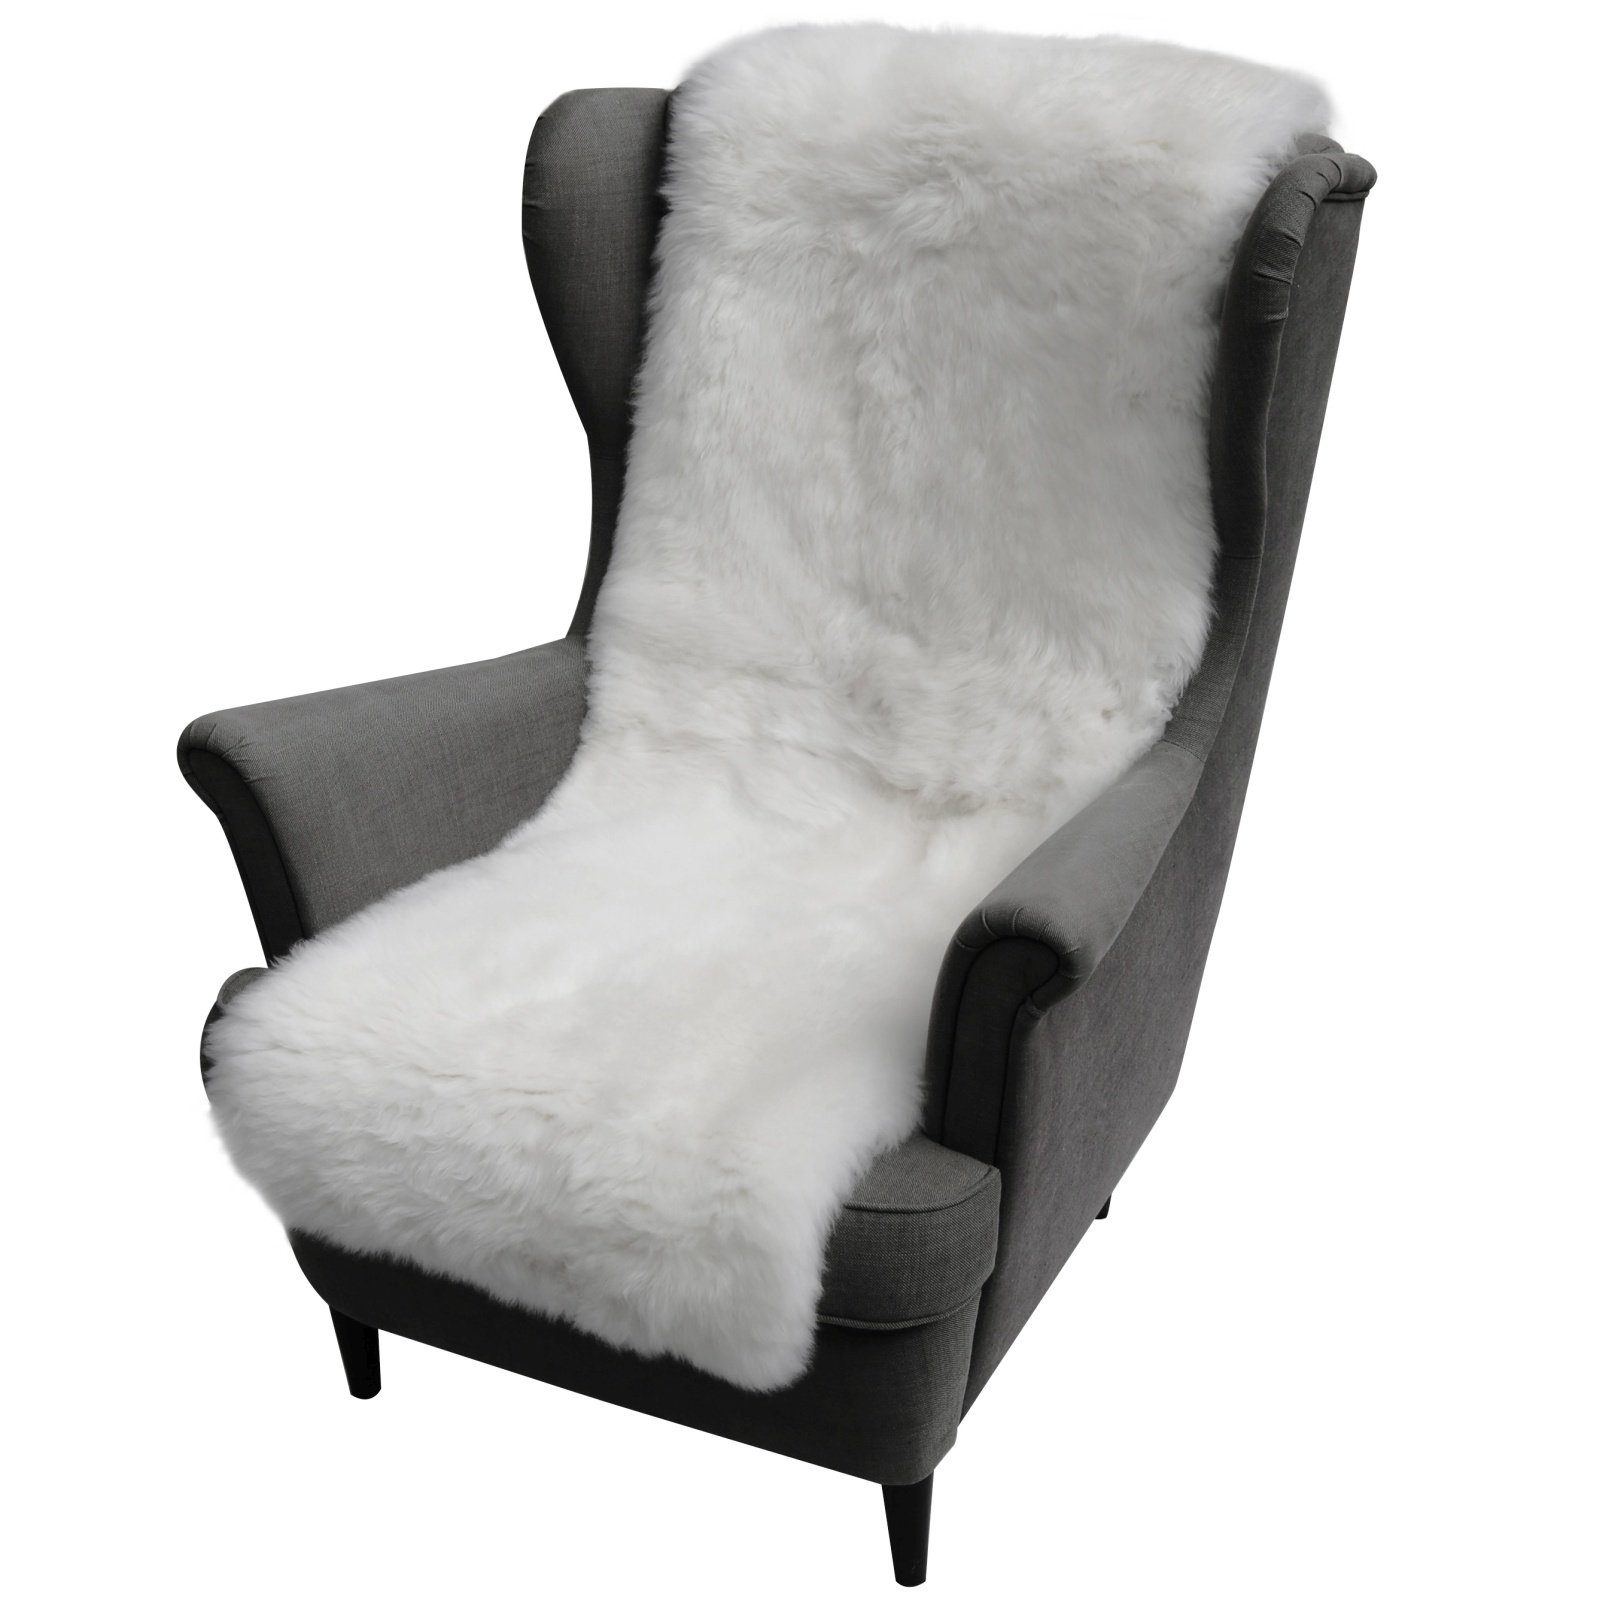 Lammfell Sitzkissen Sitzpolster 40 x 40 cm Stuhlauflage kuscheliges Merino  Fell